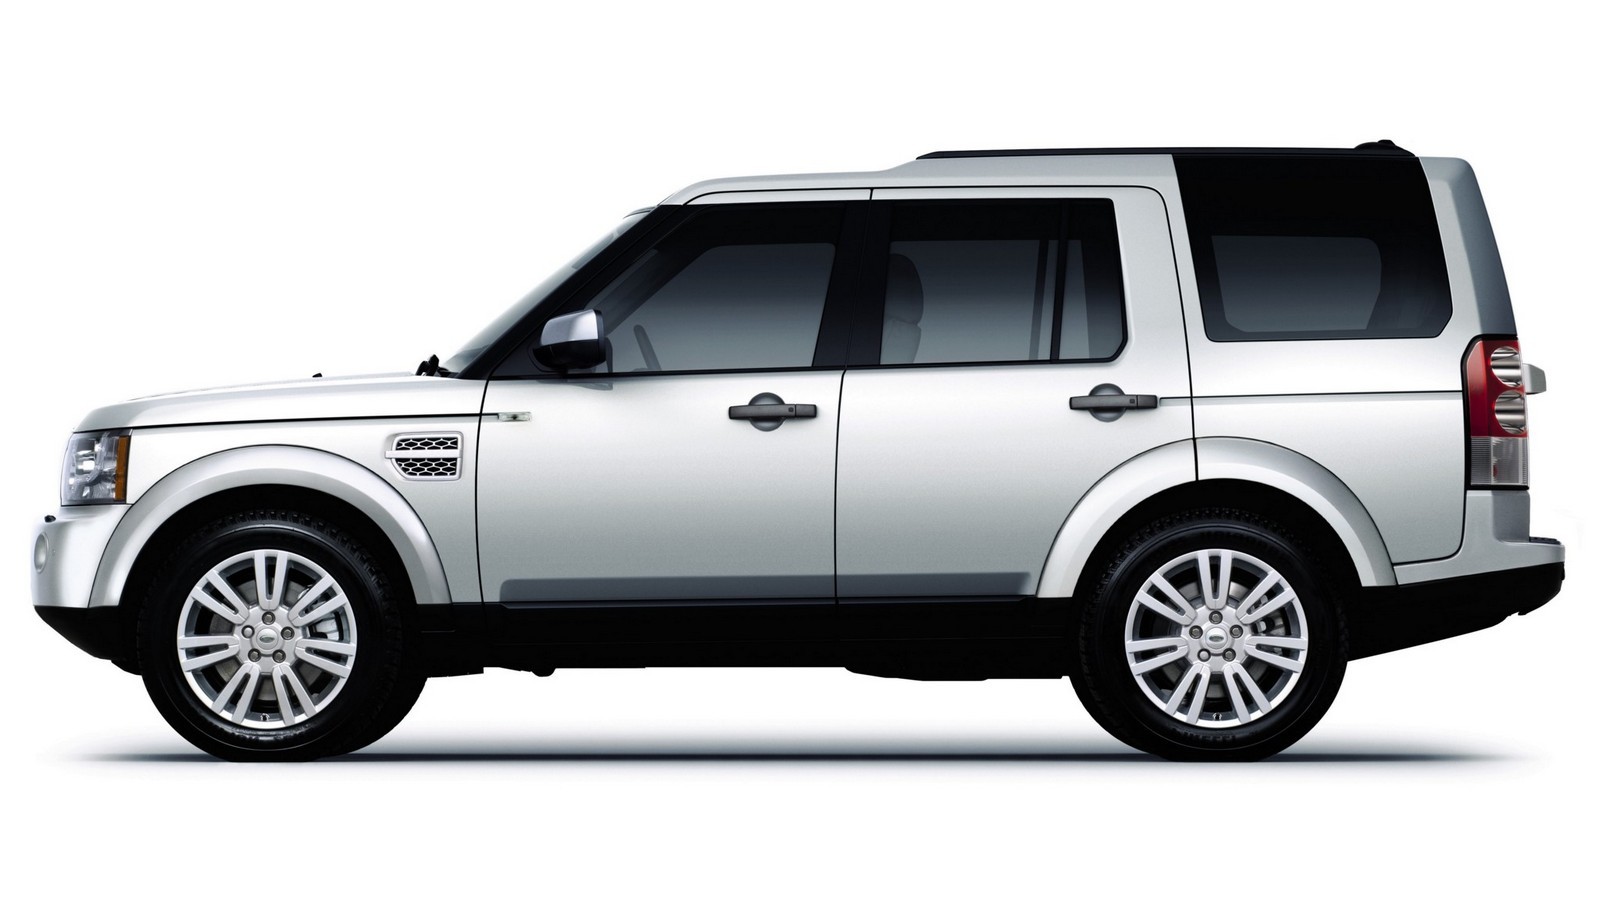 Риски дизеля и мощь бензина: стоит ли покупать Land Rover Discovery IV за 2,5 миллиона